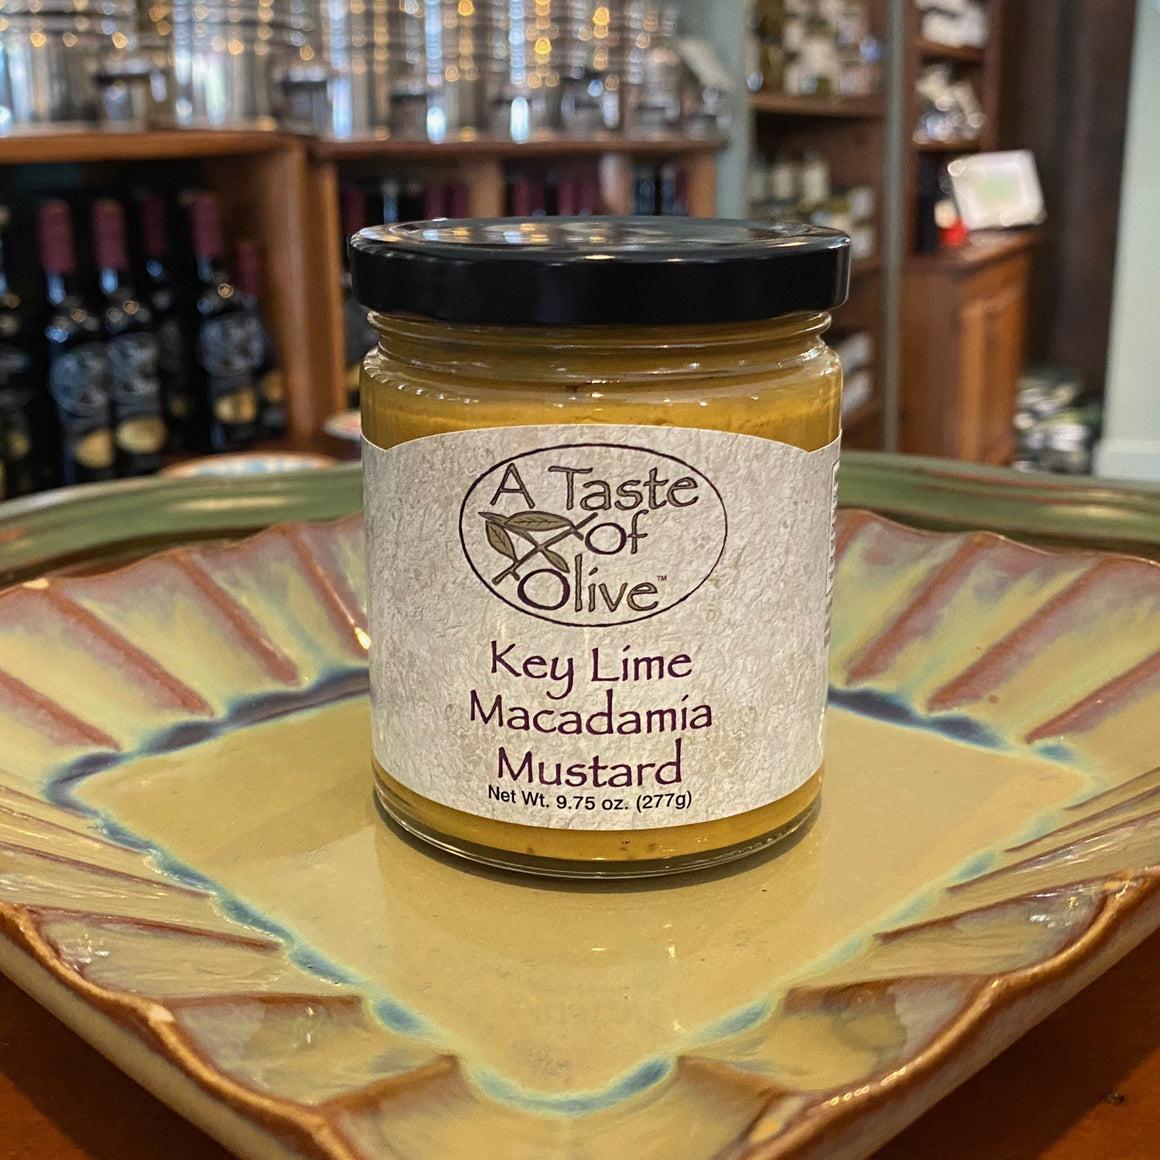 Key Lime Macadamia Mustard - A Taste of Olive